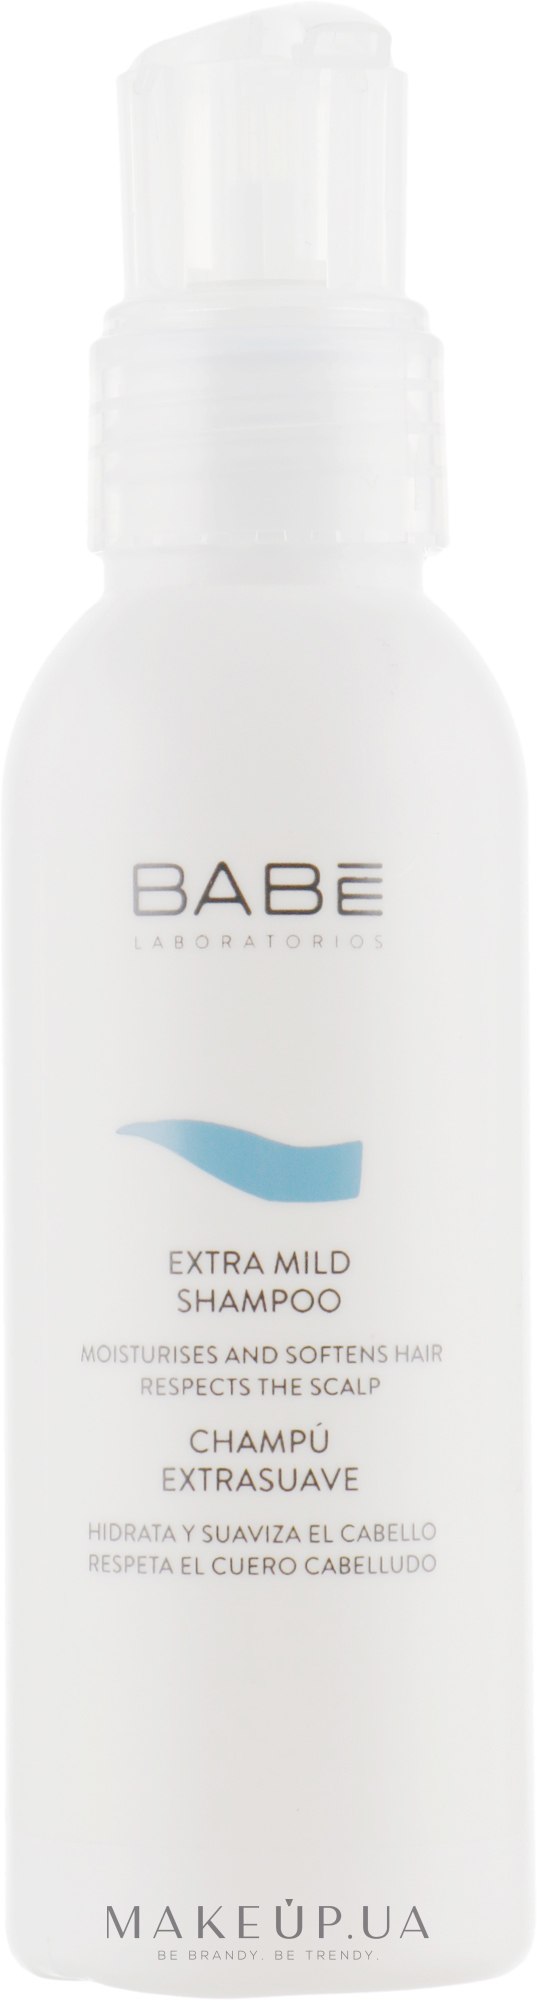 М'який шампунь для всіх типів волосся у тревел форматі - Babe Laboratorios Extra Mild Shampoo Trevel Size — фото 100ml